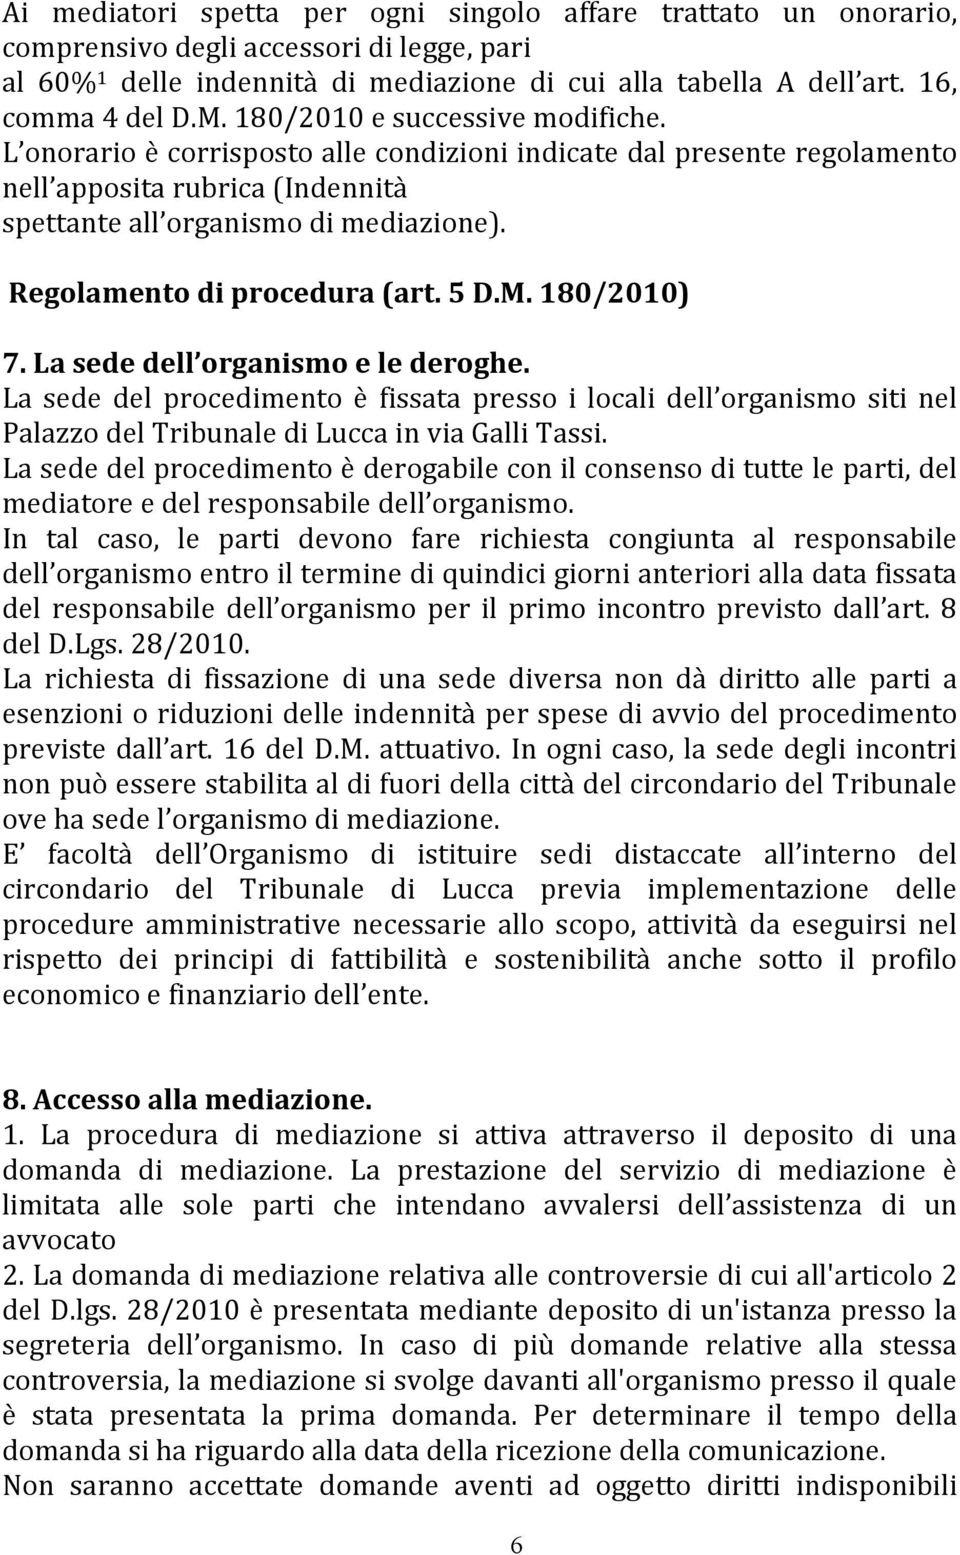 Regolamento di procedura (art. 5 D.M. 180/2010) 7. La sede dell organismo e le deroghe.